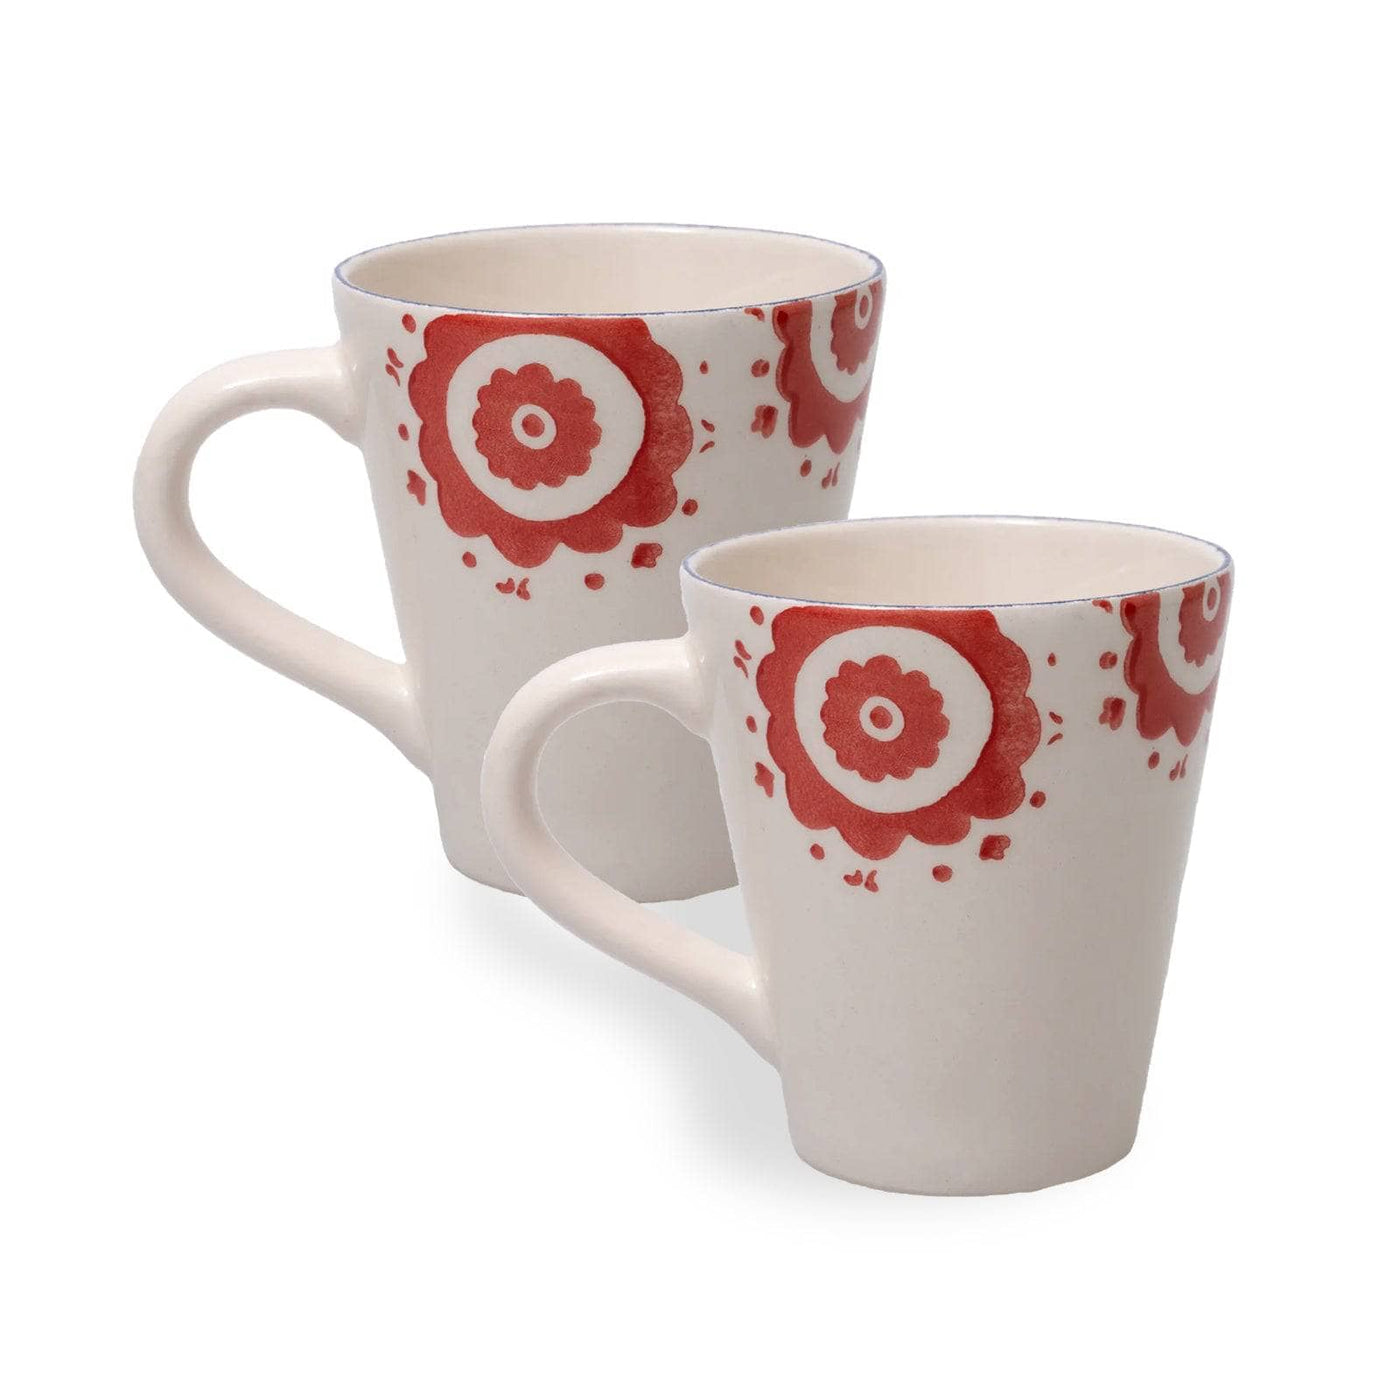 Perry Set of 2 Mugs, Multicoloured Cups & Mugs sazy.com